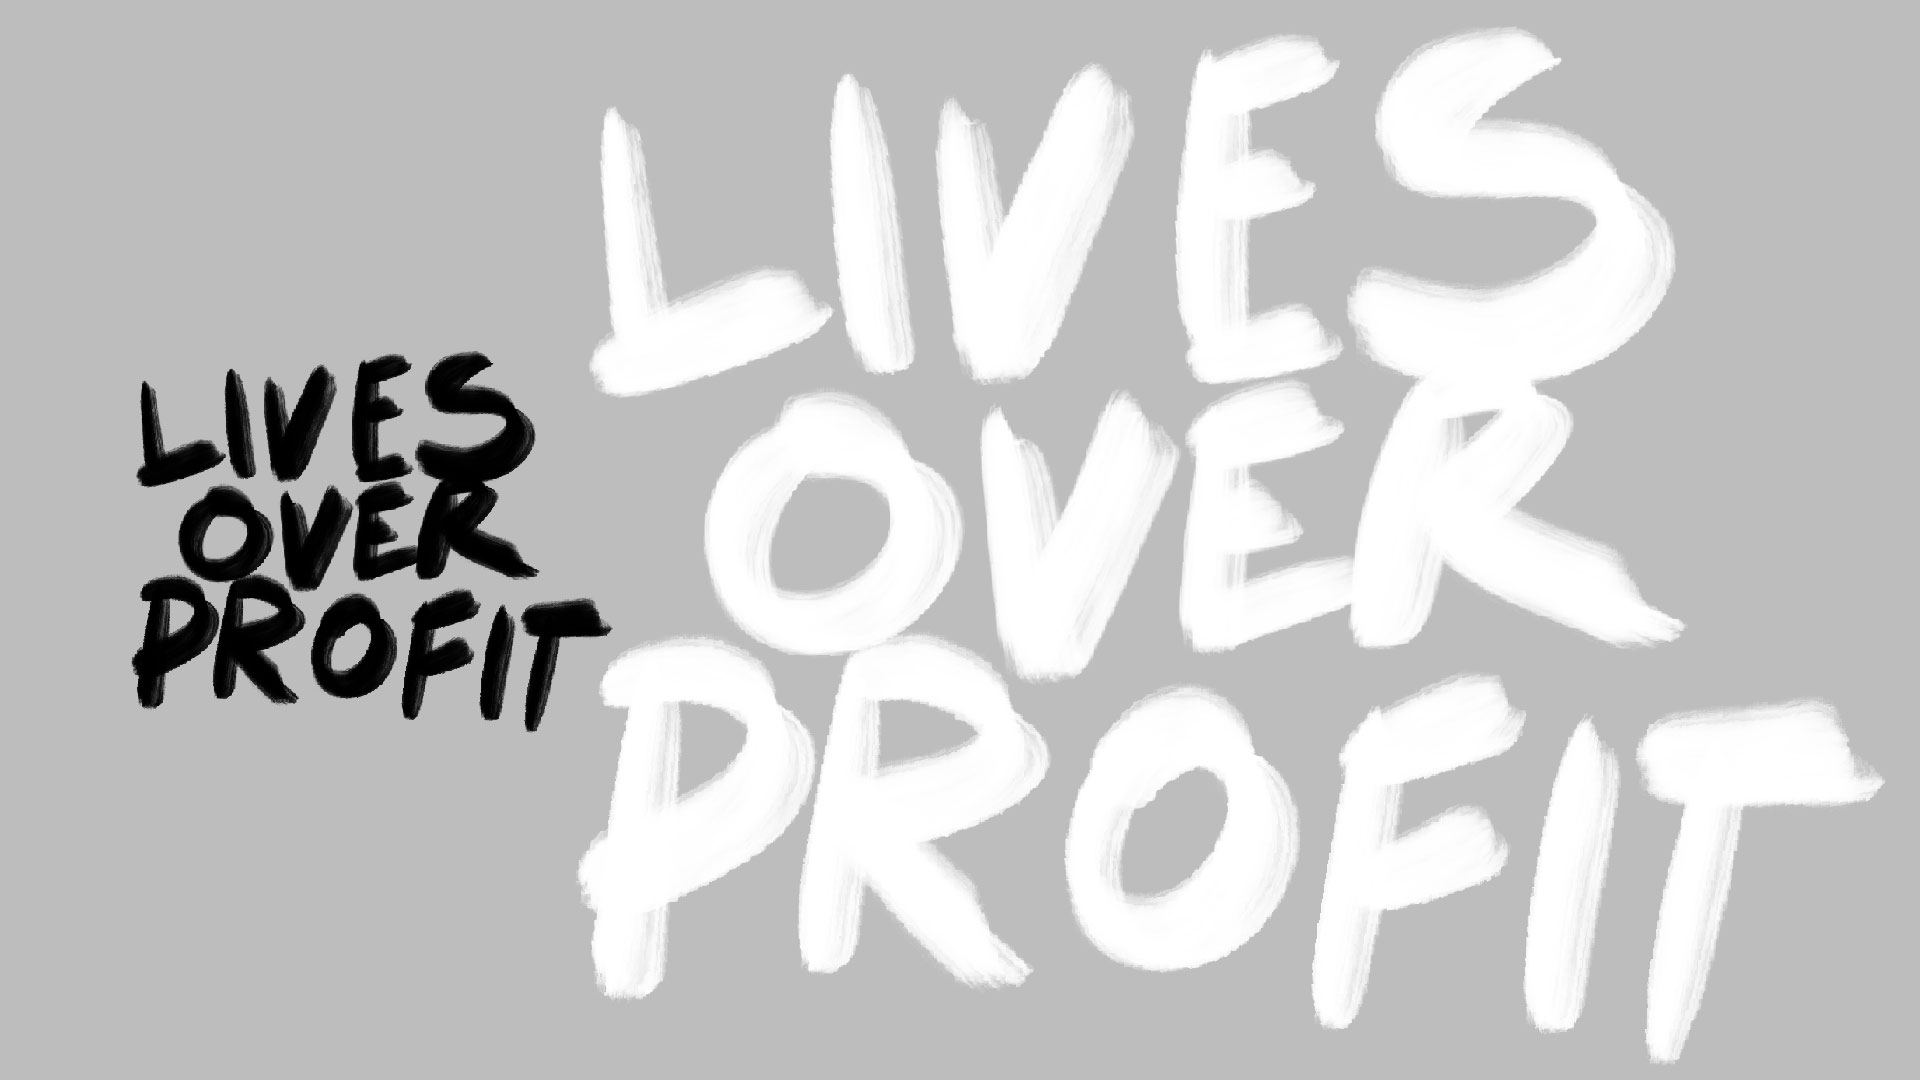 Lives over profit